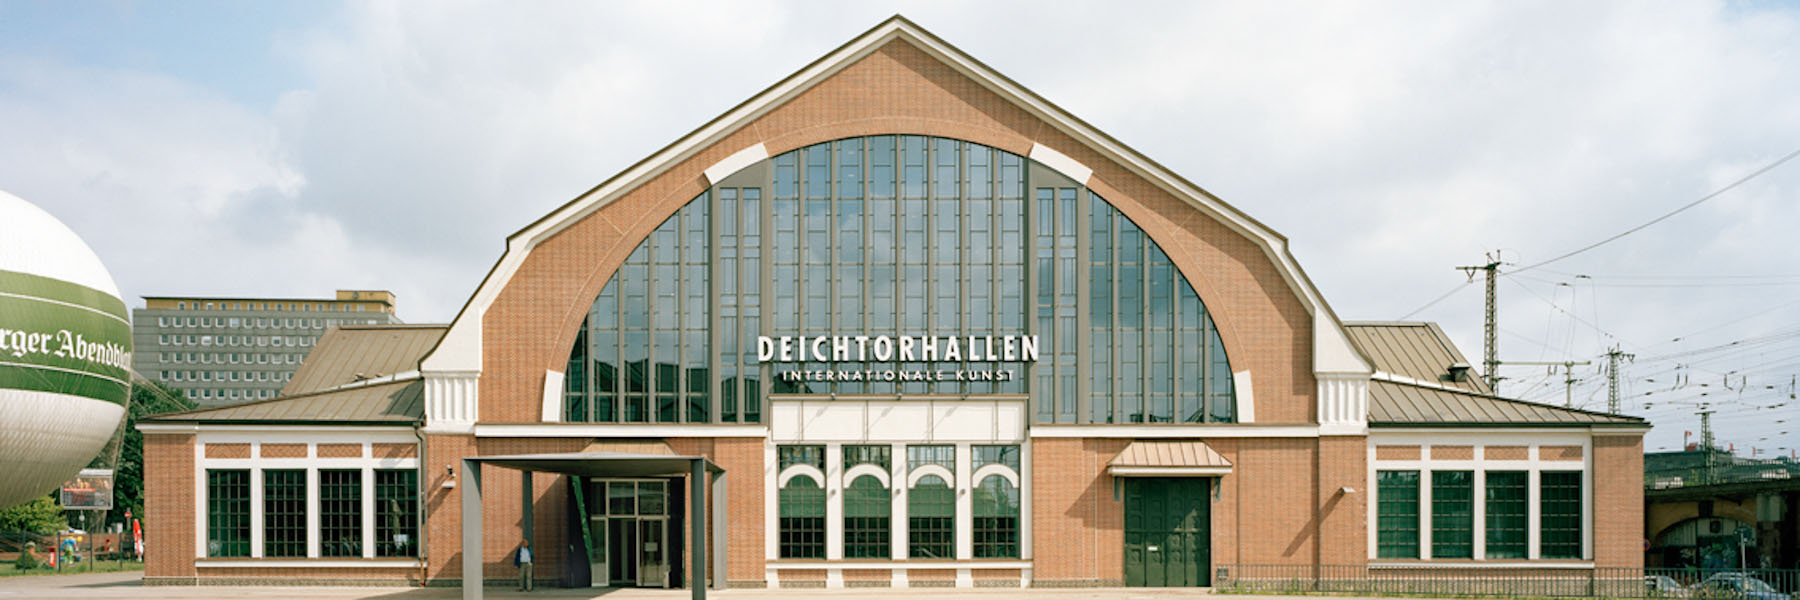  Sanierung Deichtorhallen, Hamburg